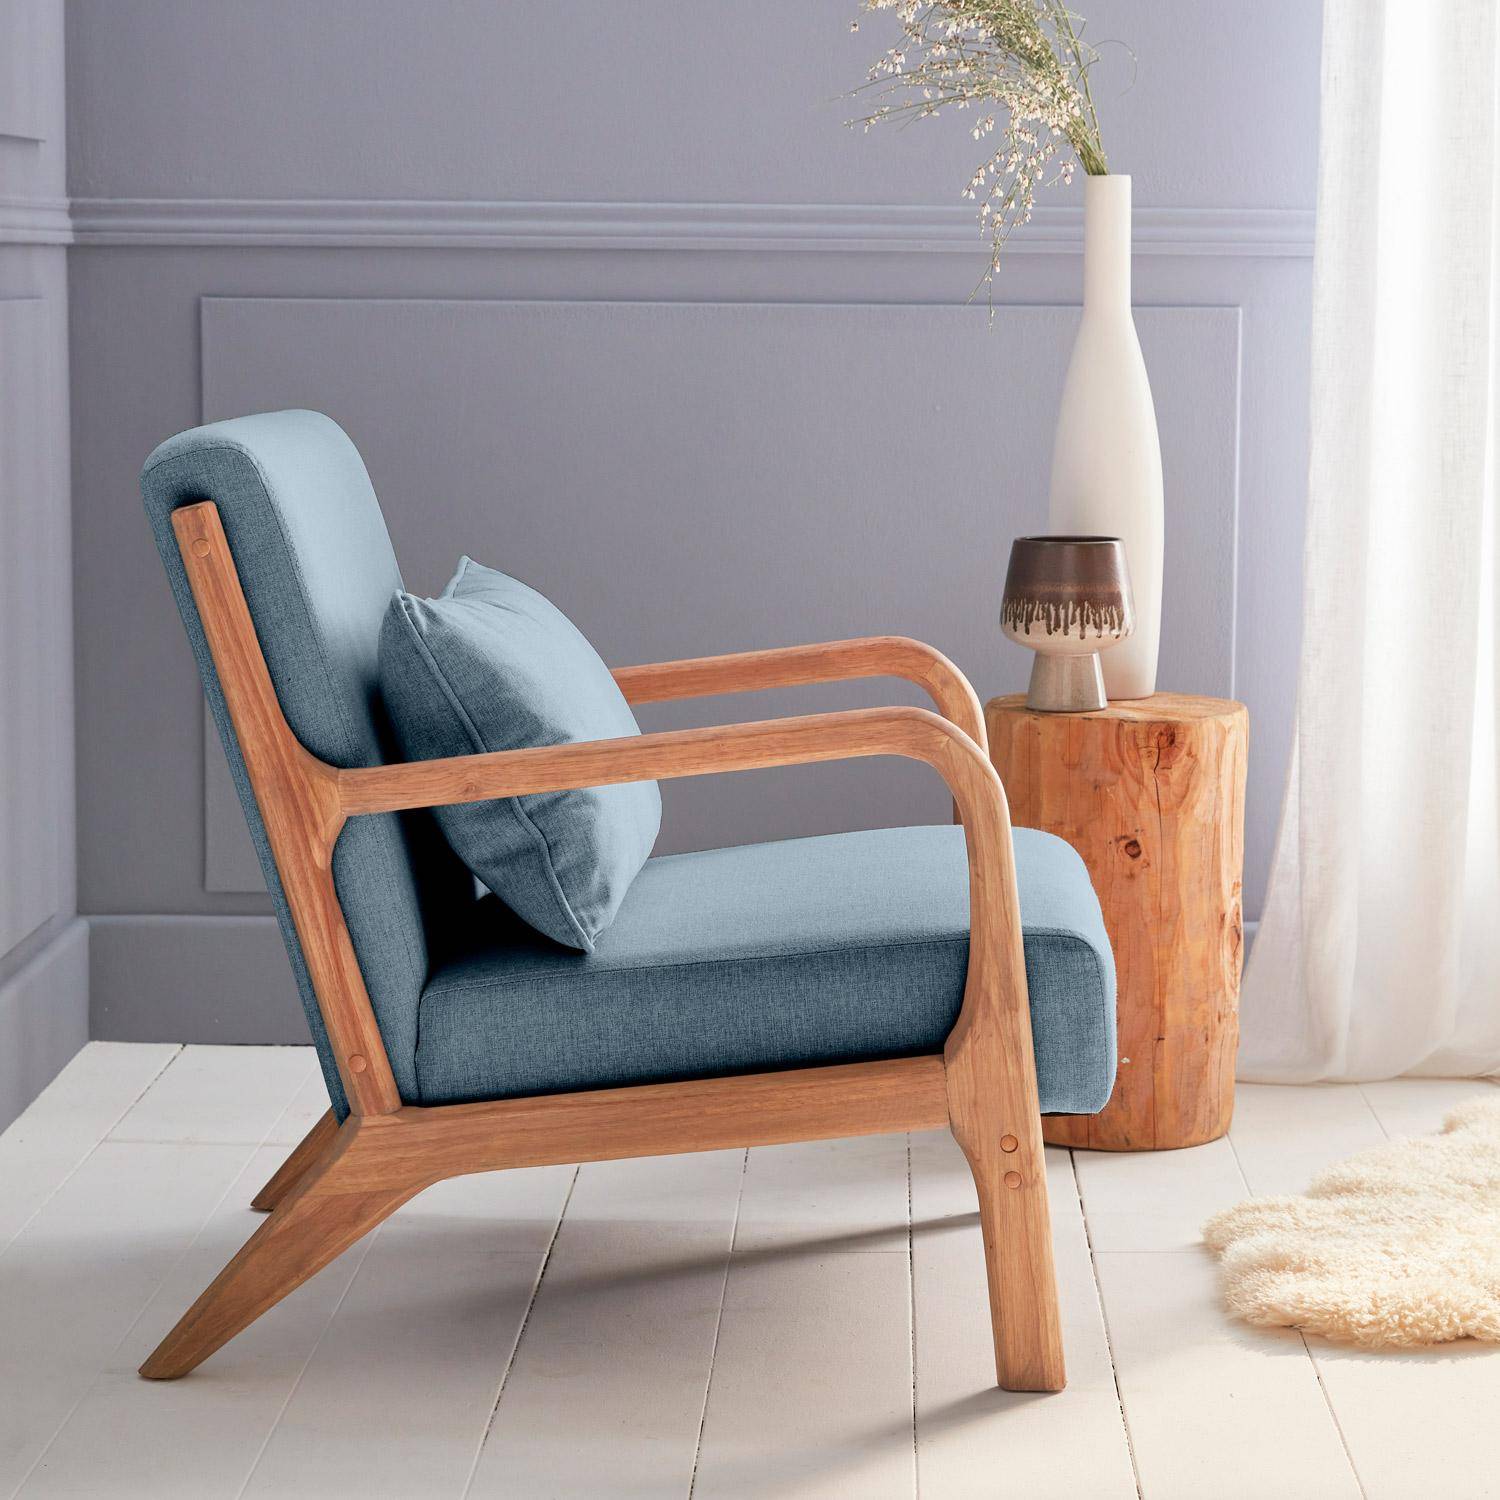 Poltrona di design in legno e tessuto, 1 seduta fissa diritta, gambe a compasso scandinave, blu Photo3